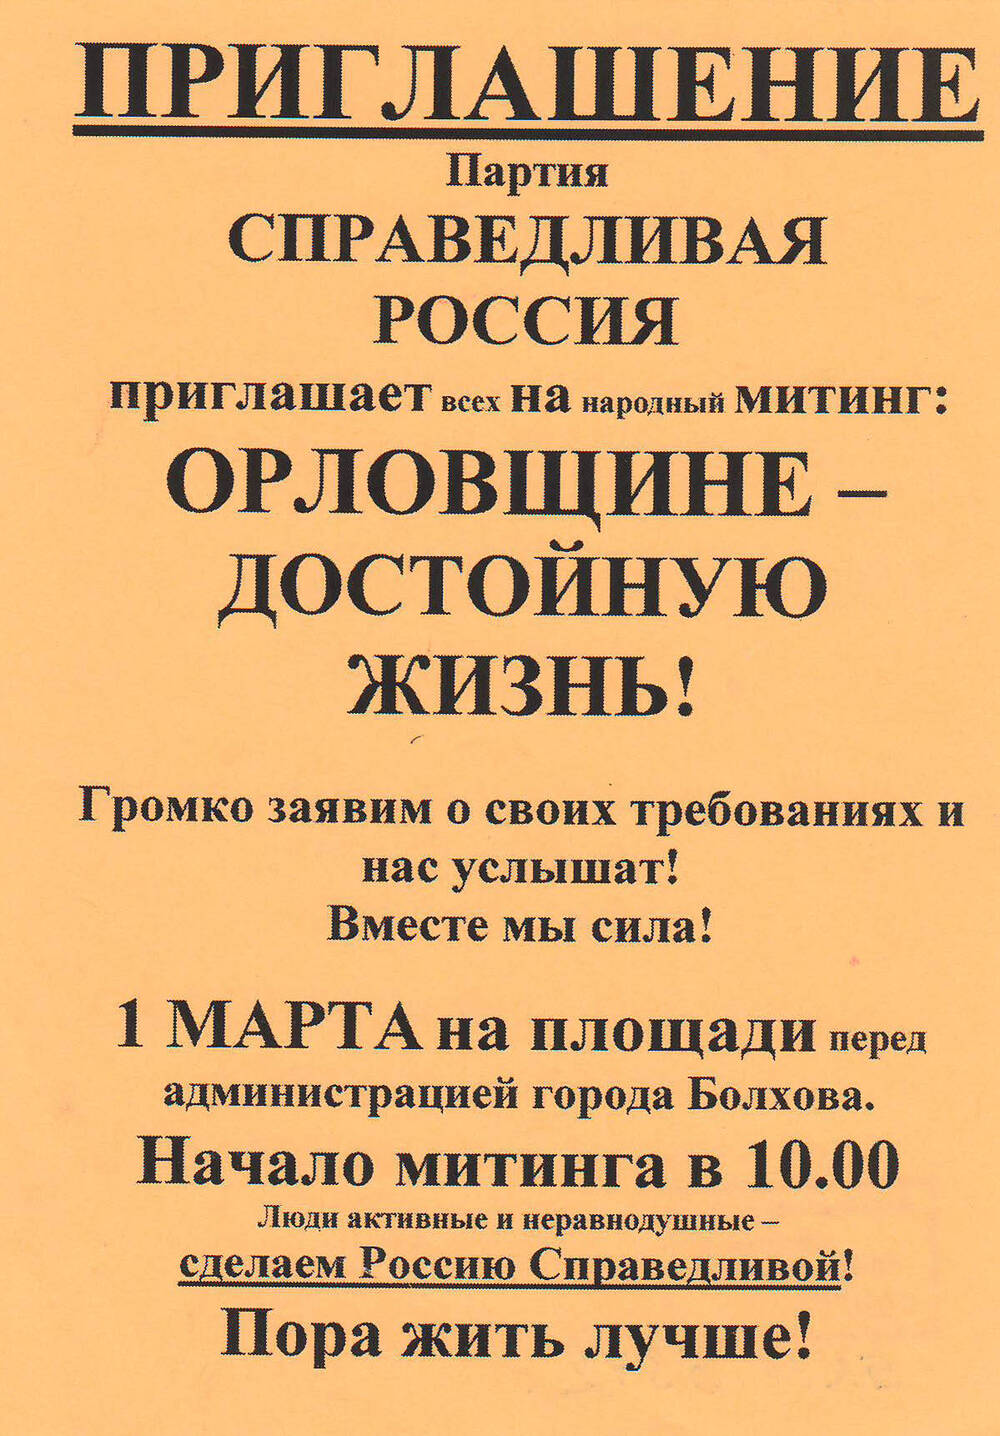 Приглашение на митинг Орловщине - достойную жизнь! от партии Справедливая Россия.